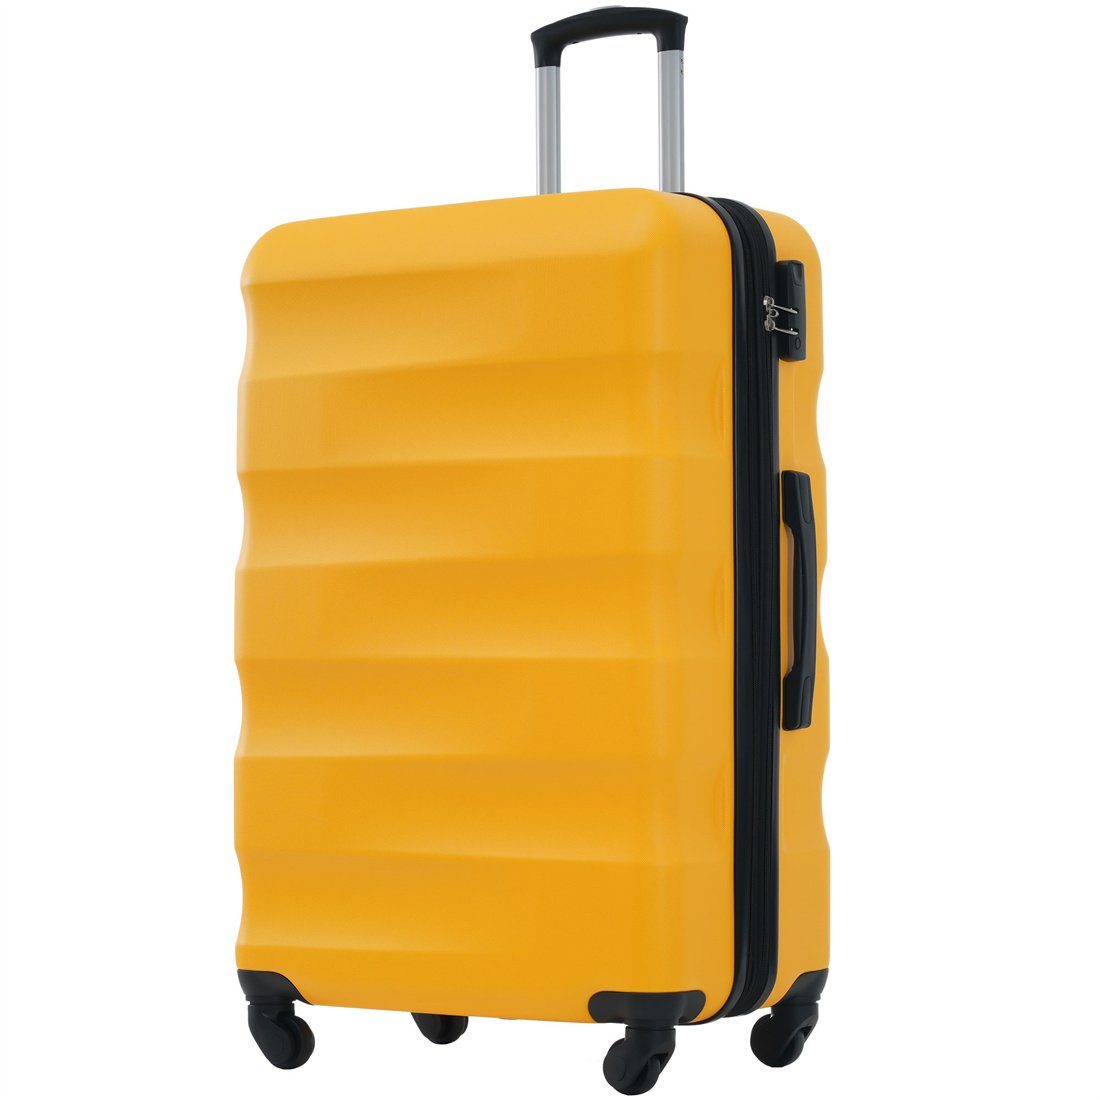 DÖRÖY Koffer Hartschalen-Koffer, Reisekoffer, ABS-Material 69*44.5*26.5cm, Gelb